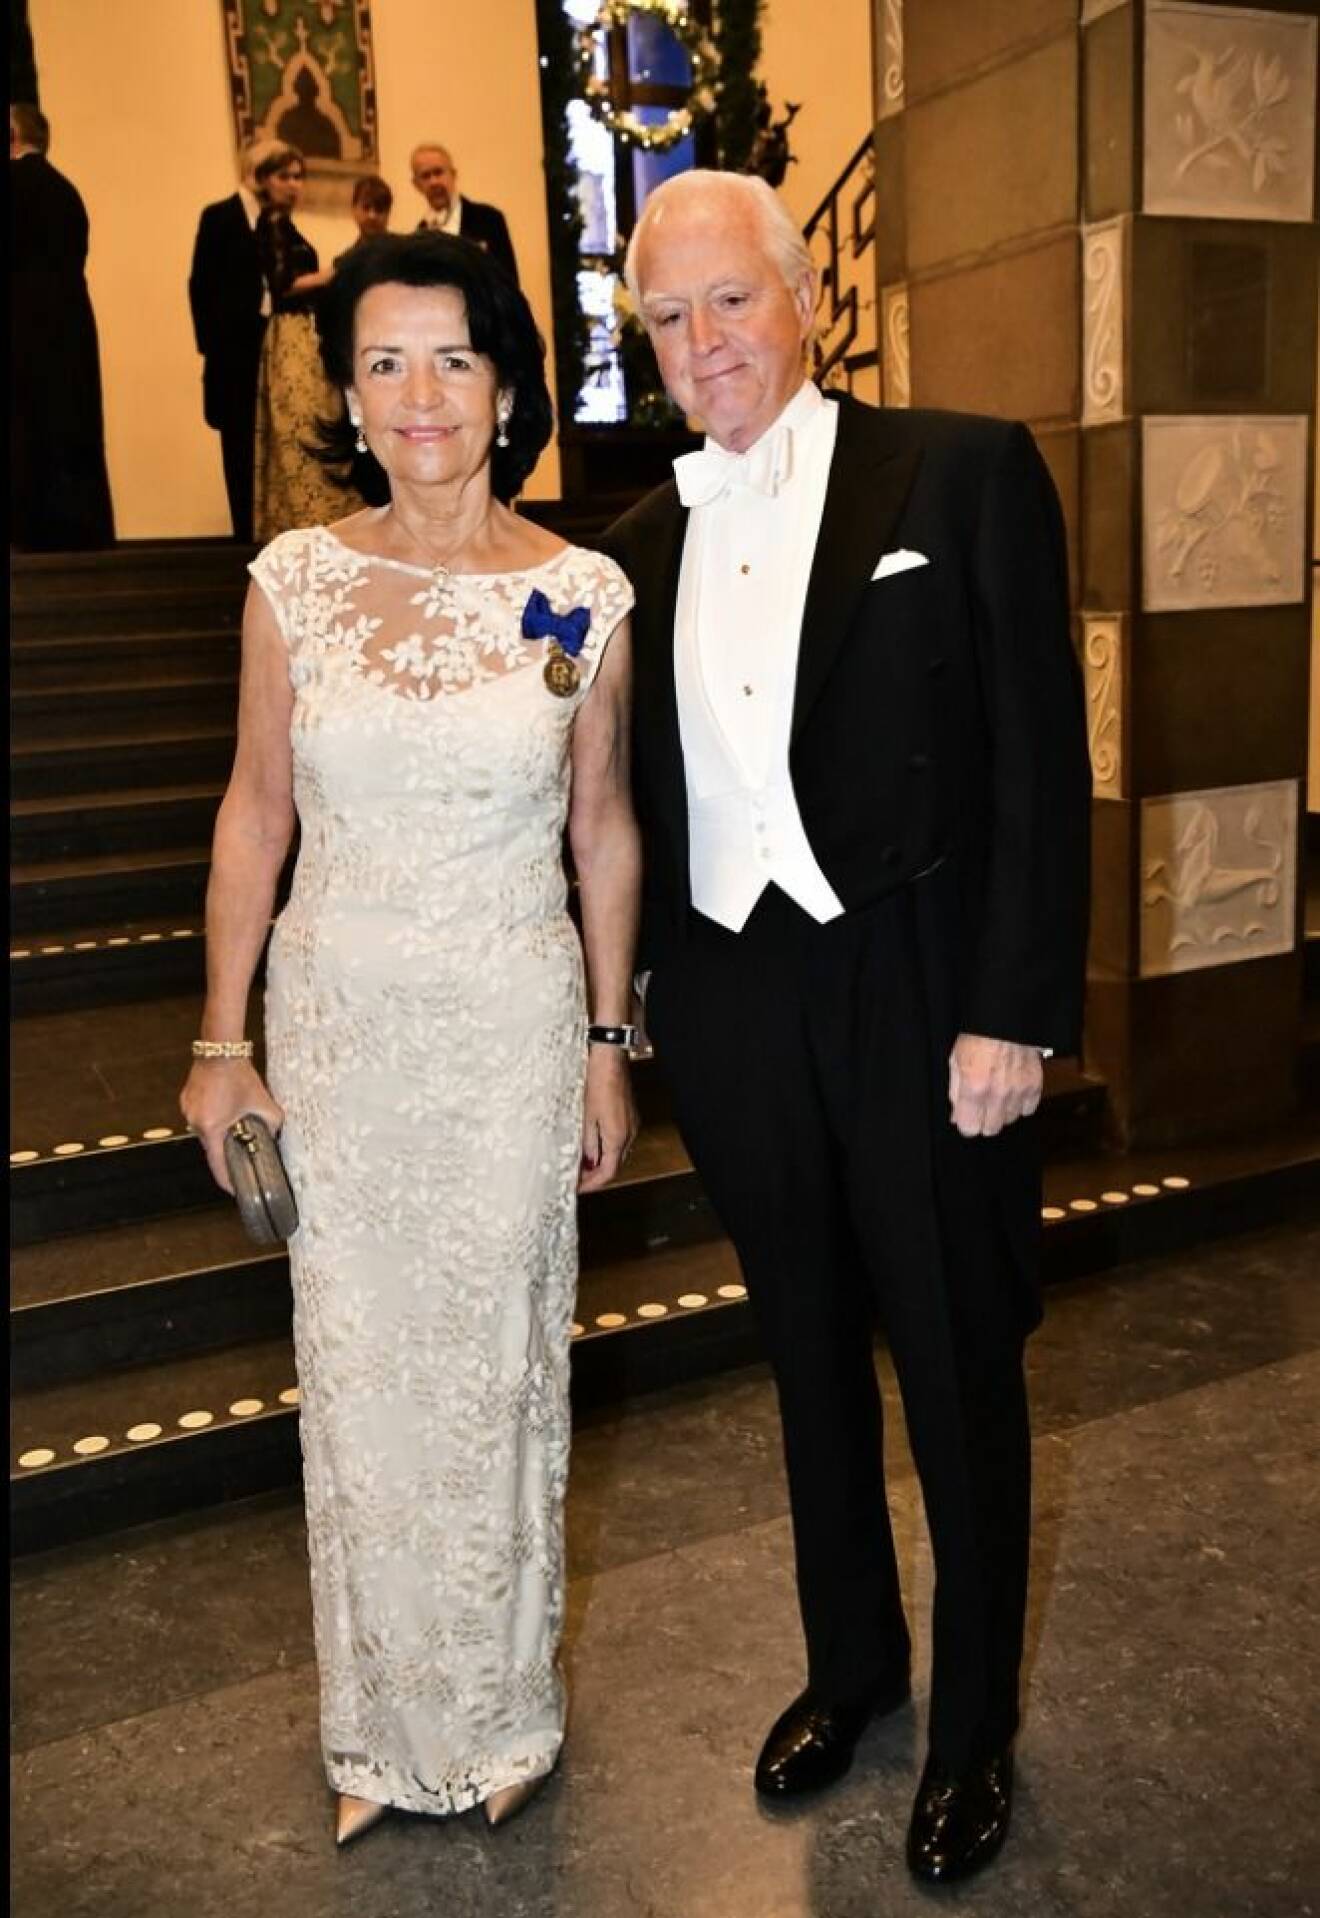 Advokatsamfundets generalsekreterare Anne Ramberg i vit klänning